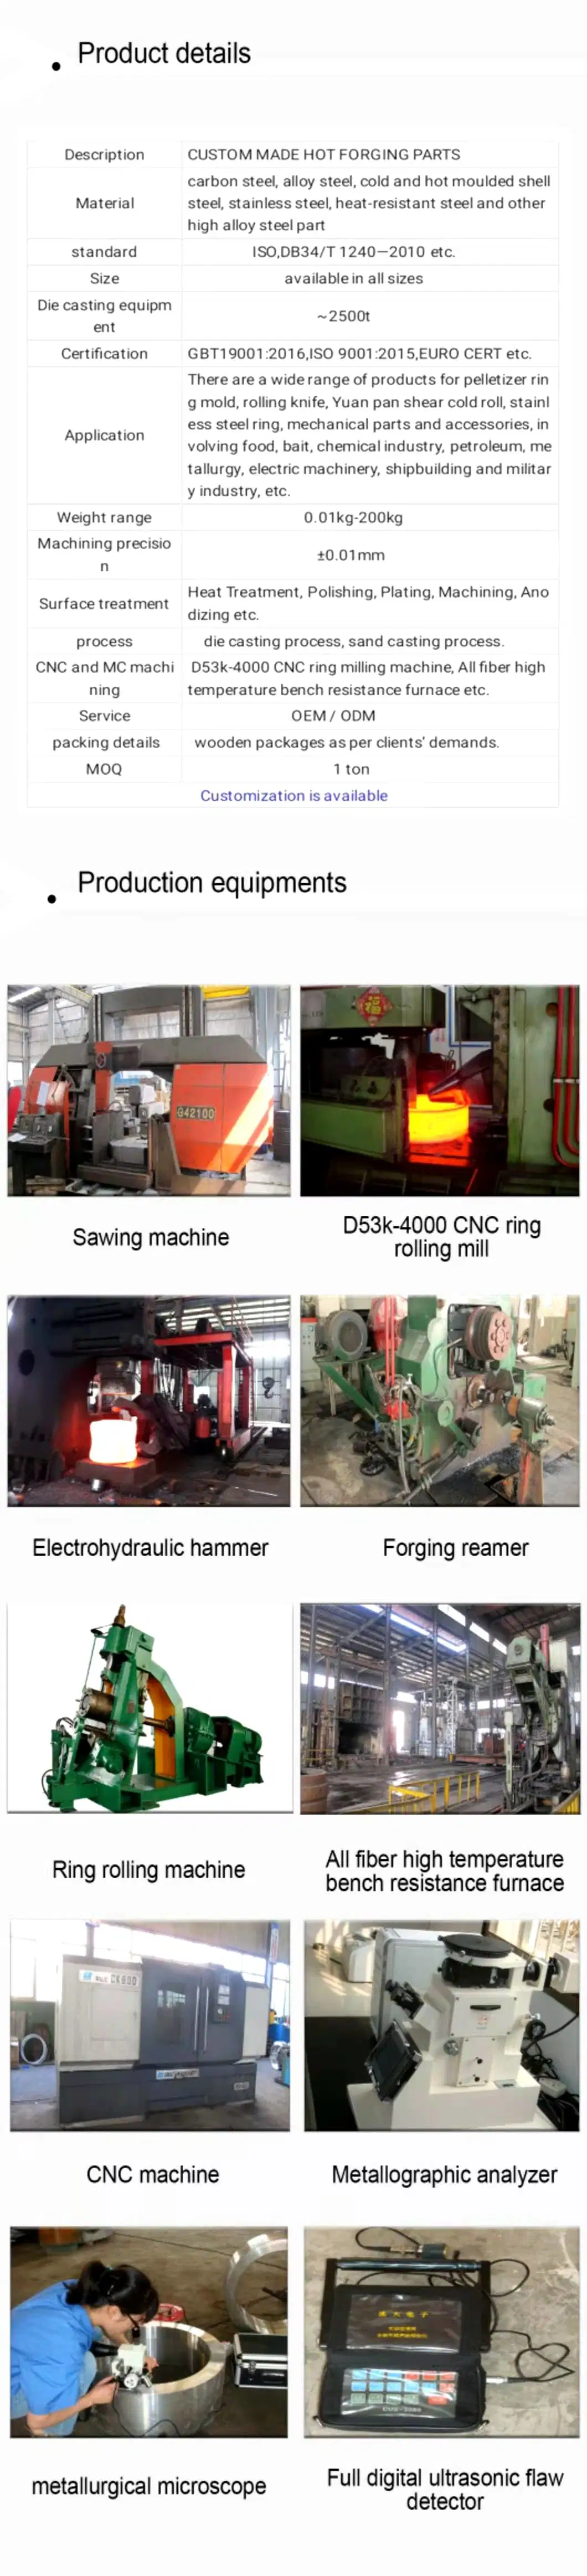 Thermal Die Steel Stainless Steel Heat Resistant Steel with CNC Machining